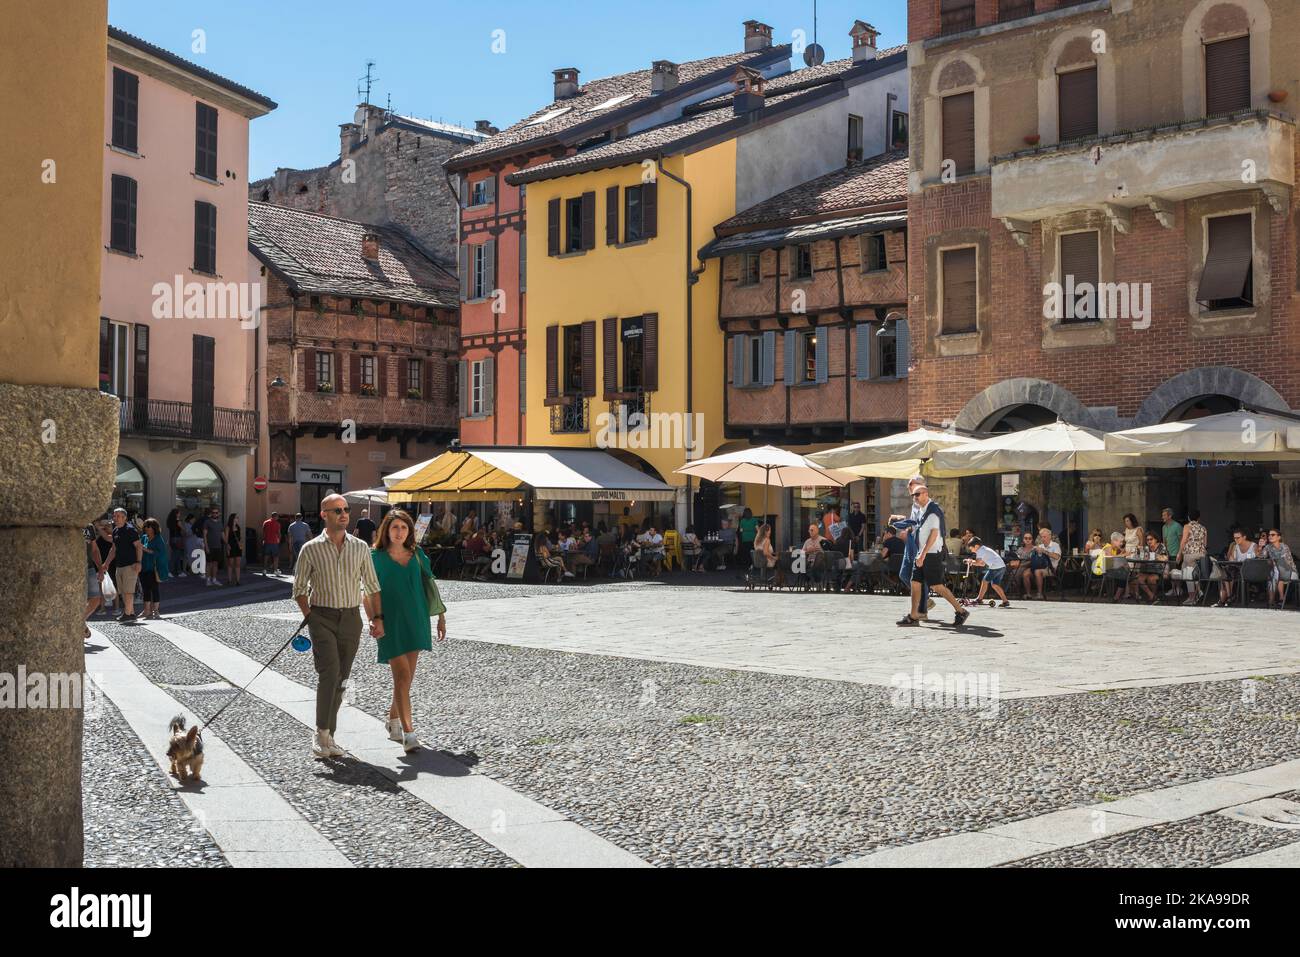 Italie piazza, vue en été des cafés et bars pittoresques de la Piazza San Fedele dans le centre historique de la ville de Côme, Lombardie, Italie Banque D'Images